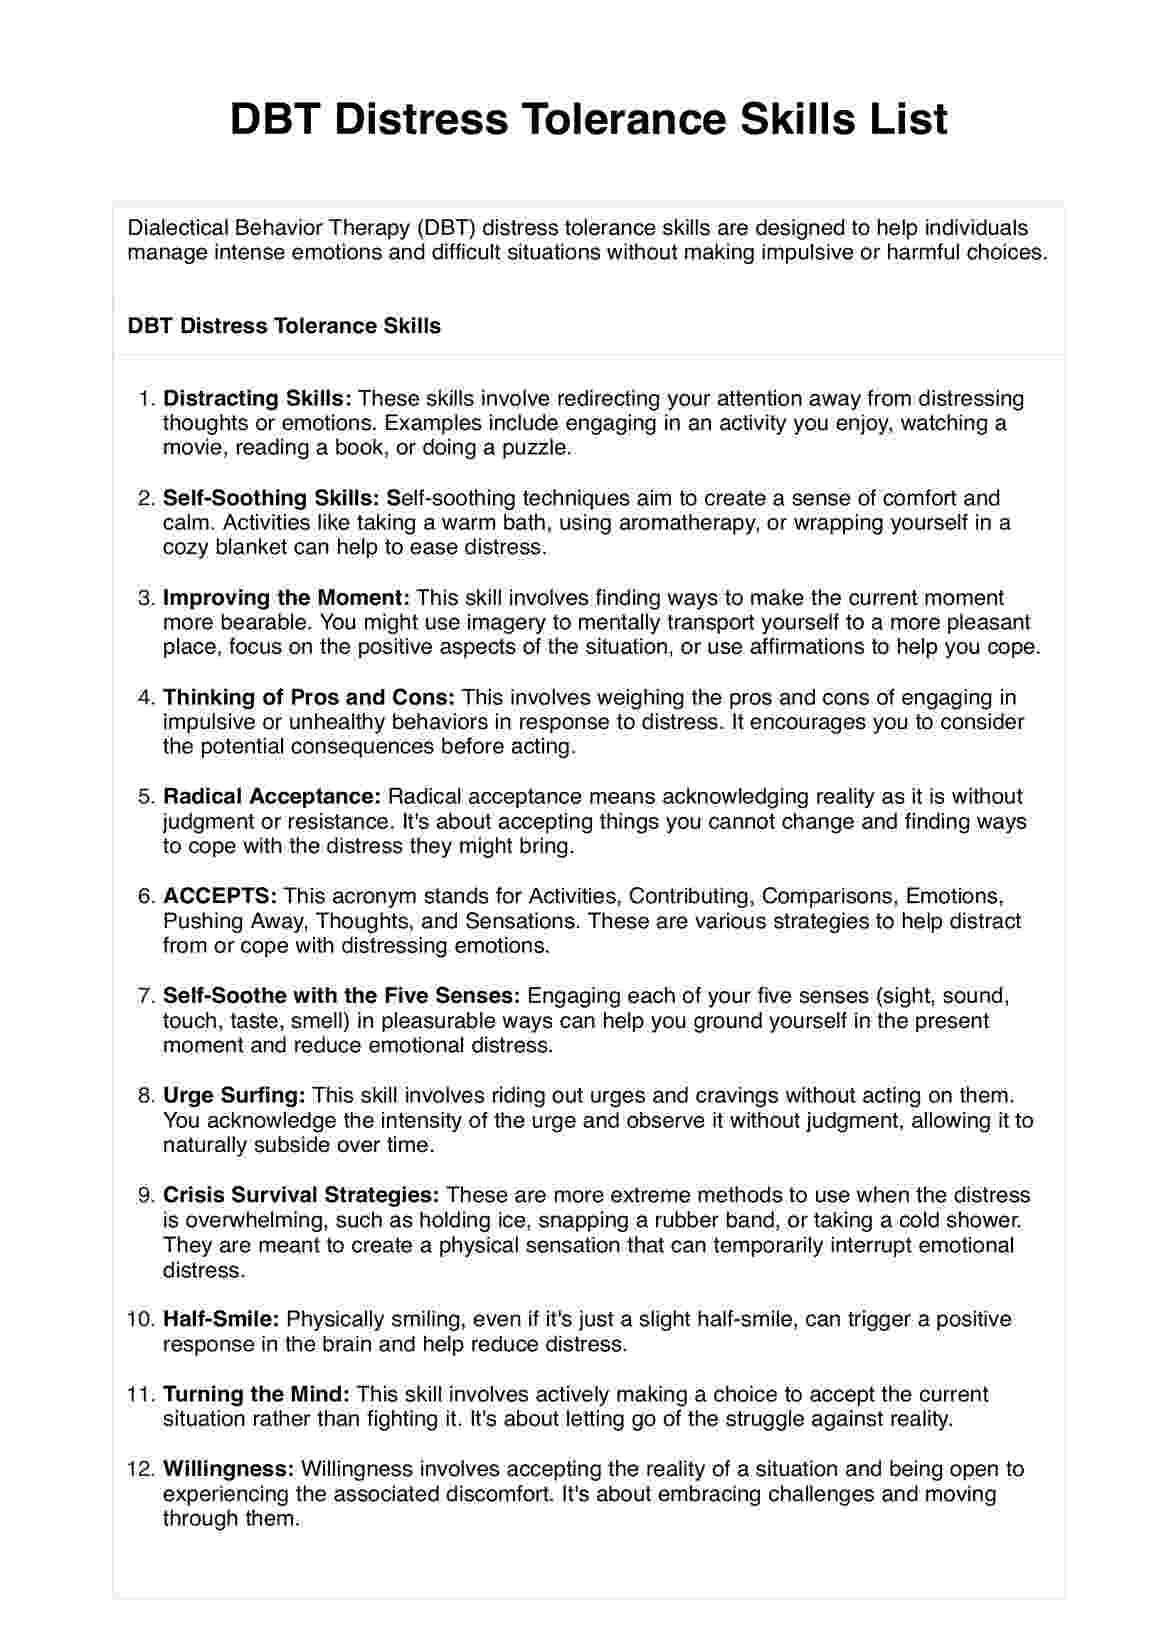 DBT Distress Tolerance Skills List PDF Example